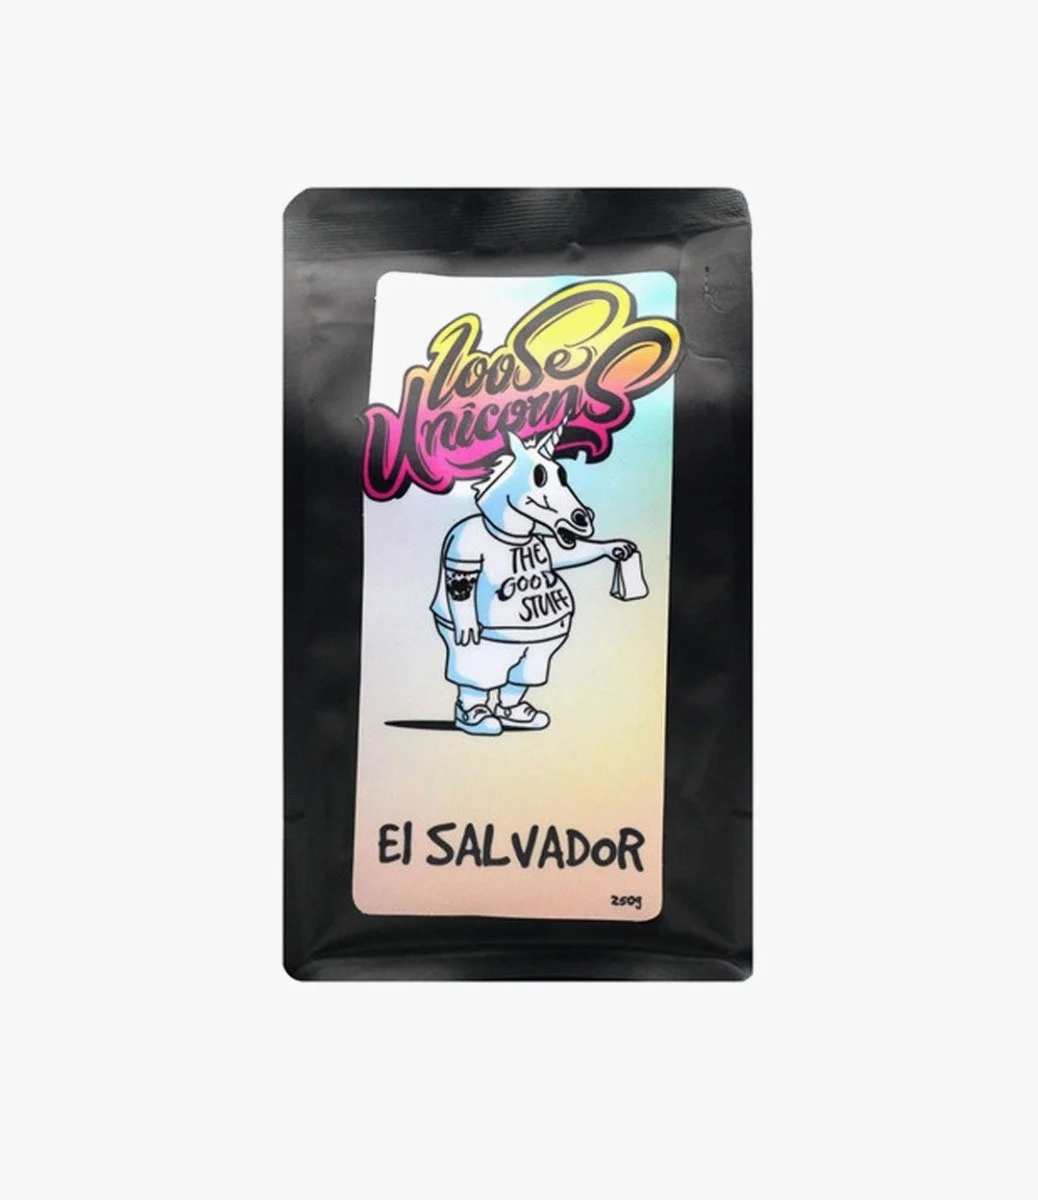  El Salvador Specialty Coffee Beans 250g By Loose Unicorns 